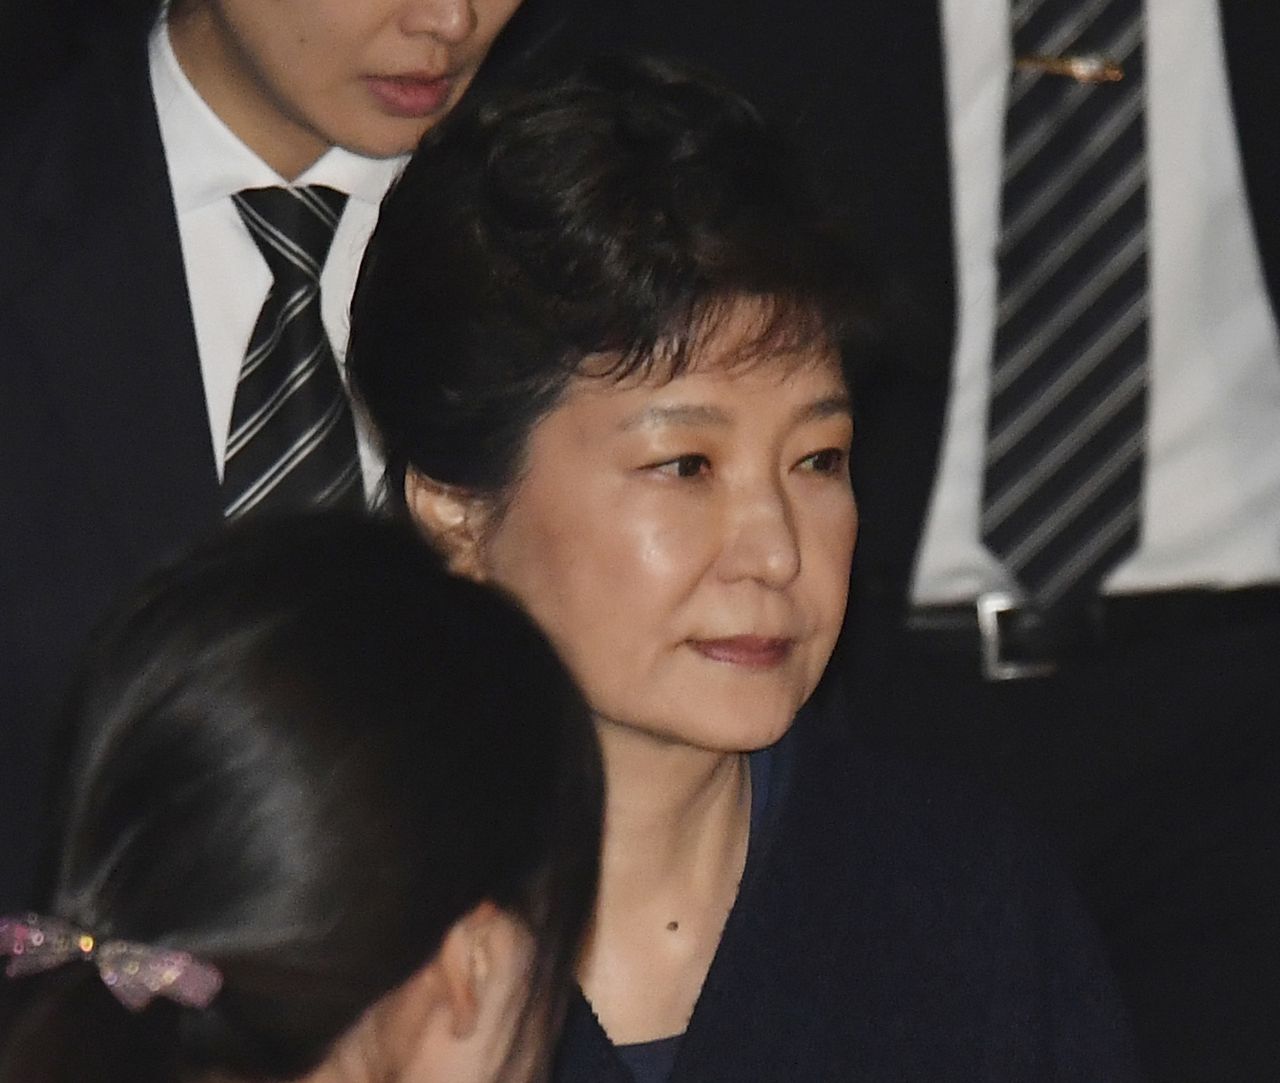 Zuid-Koreaanse oud-president Park gearresteerd 